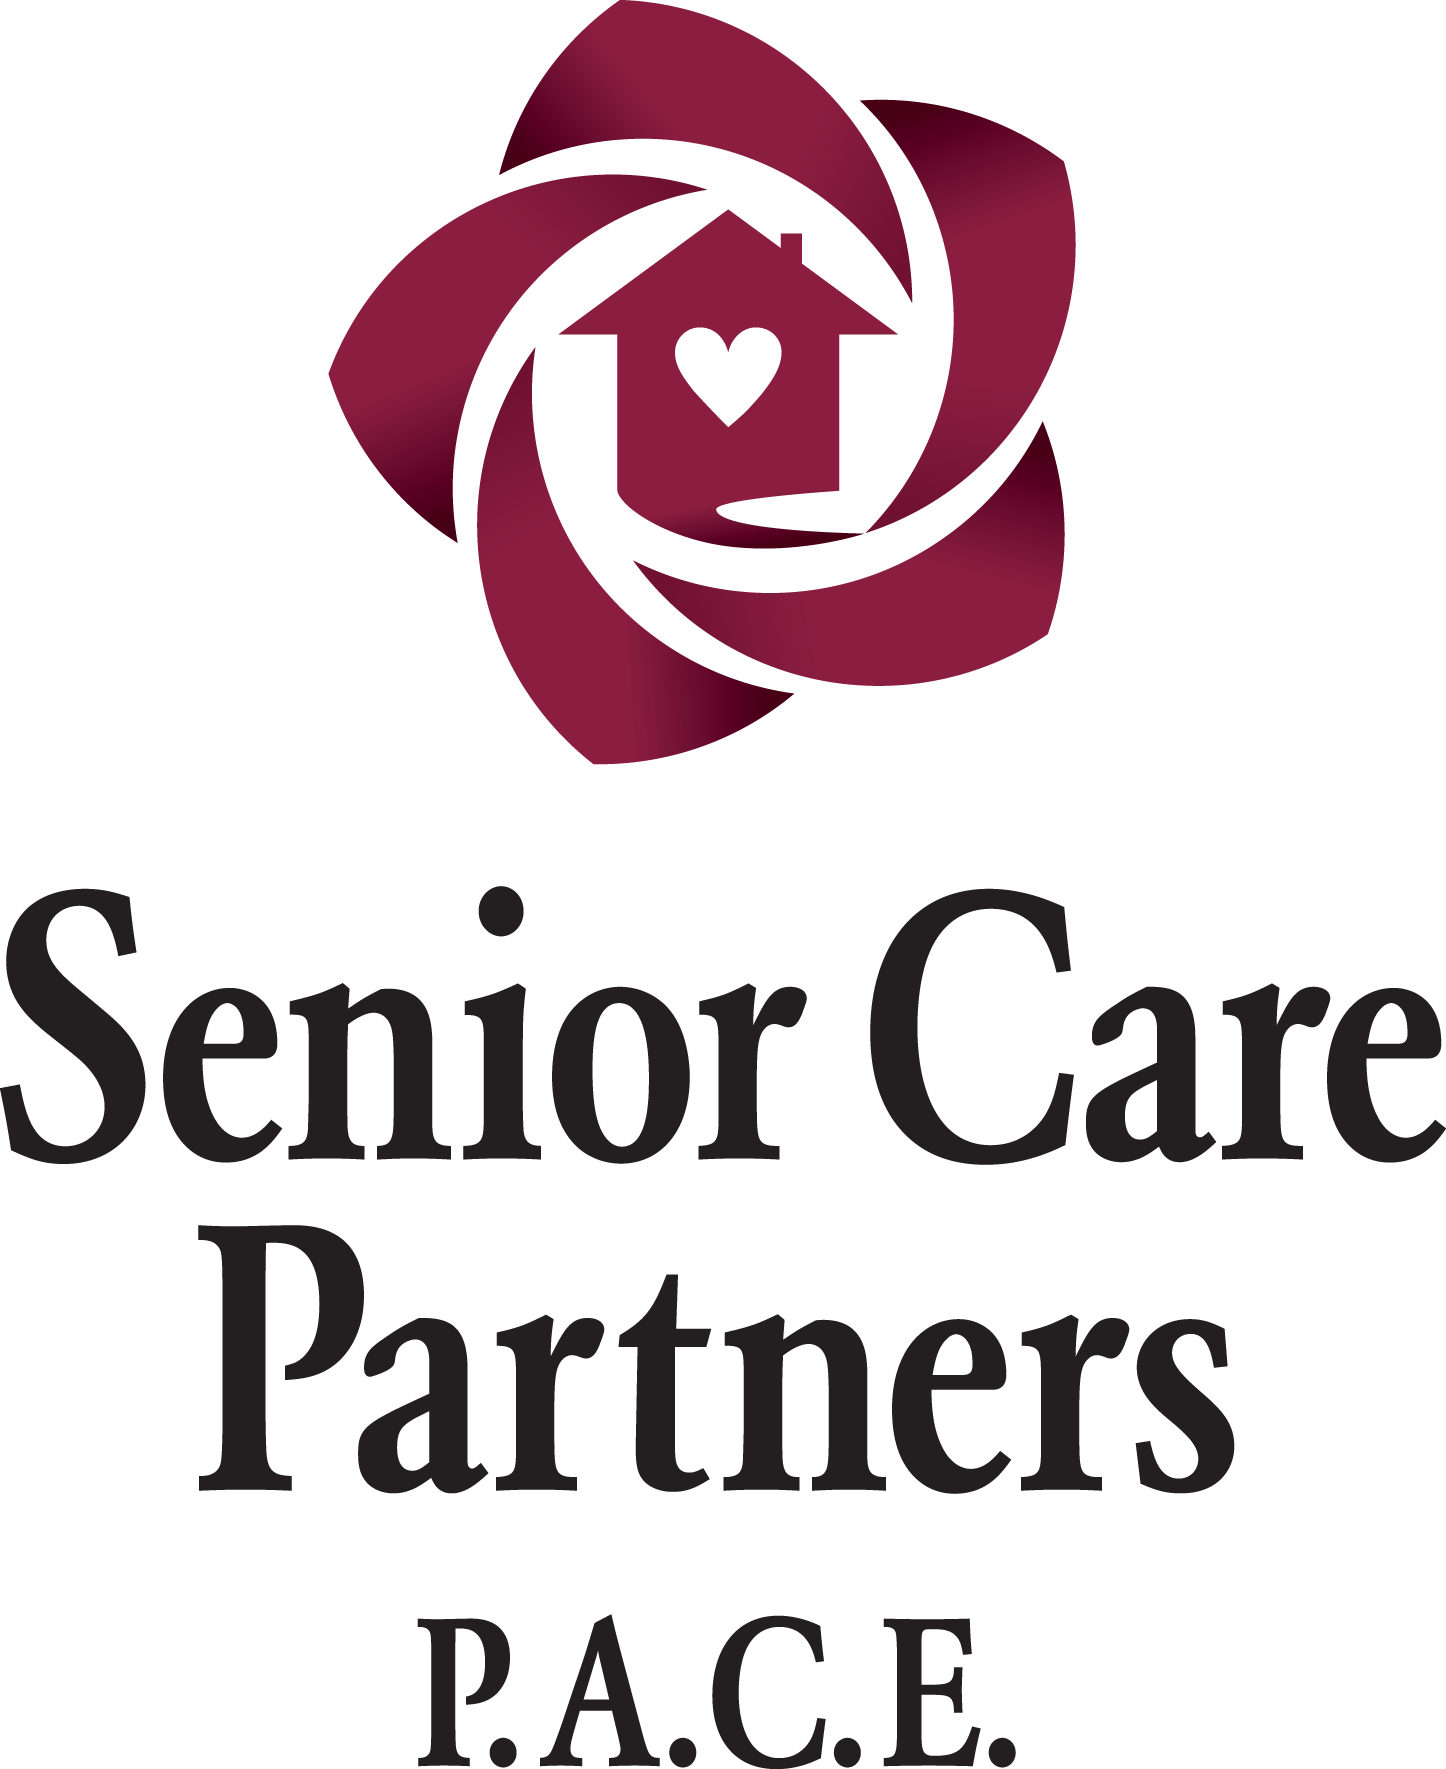 Senior Care Partners P.A.C.E.